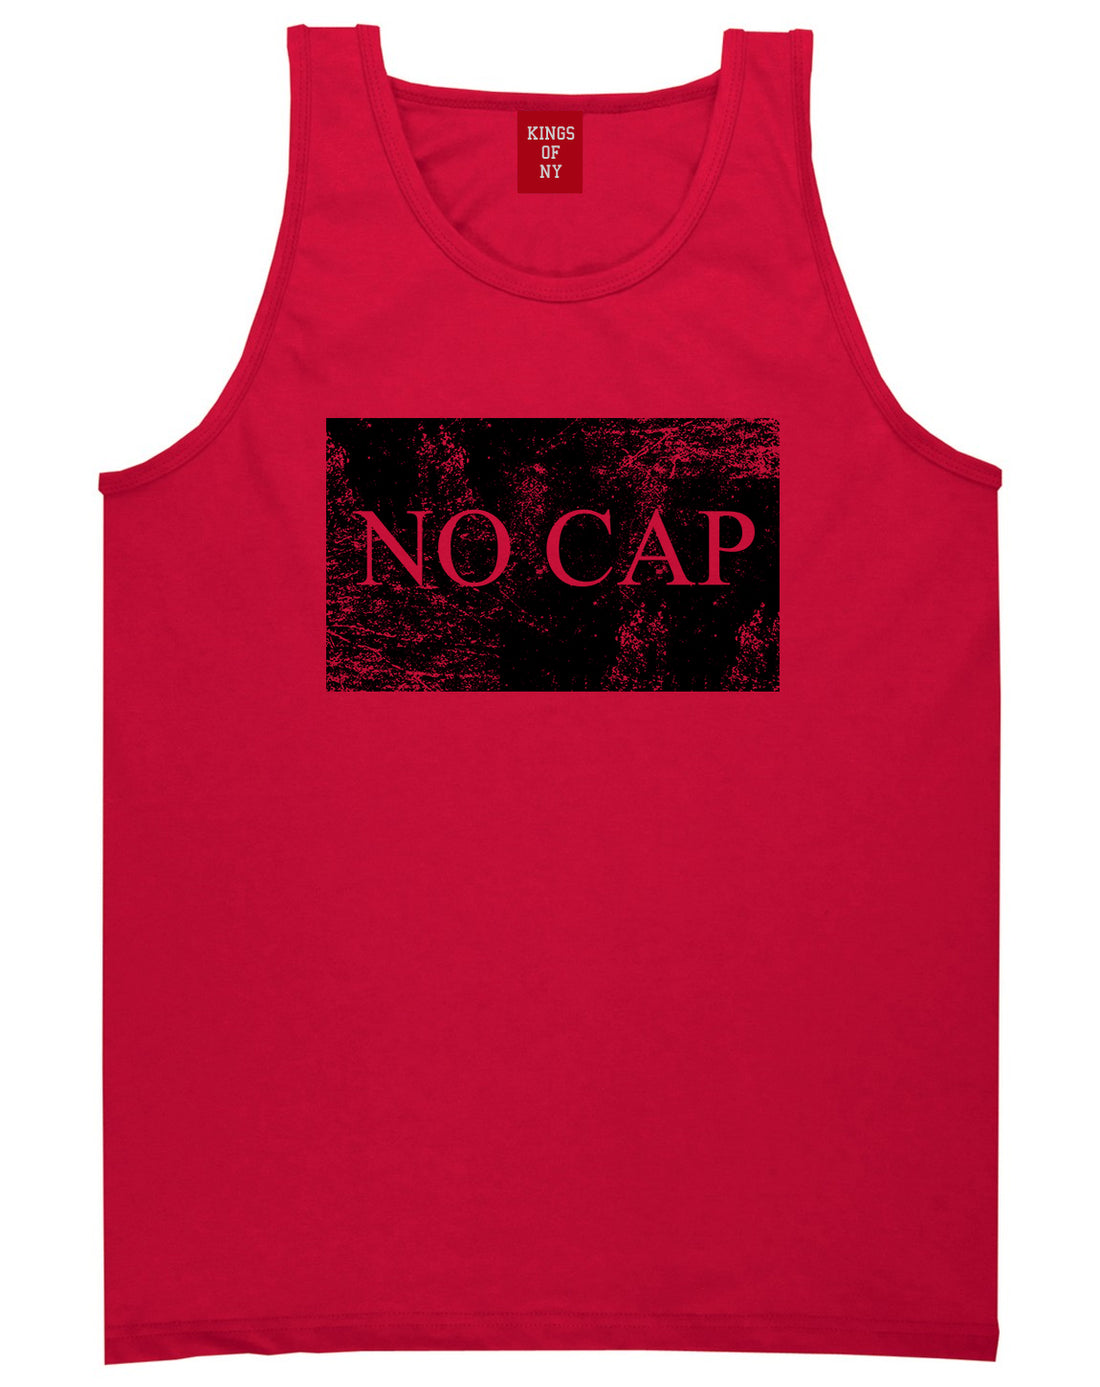 No Cap Vintage Mens Tank Top T-Shirt Red